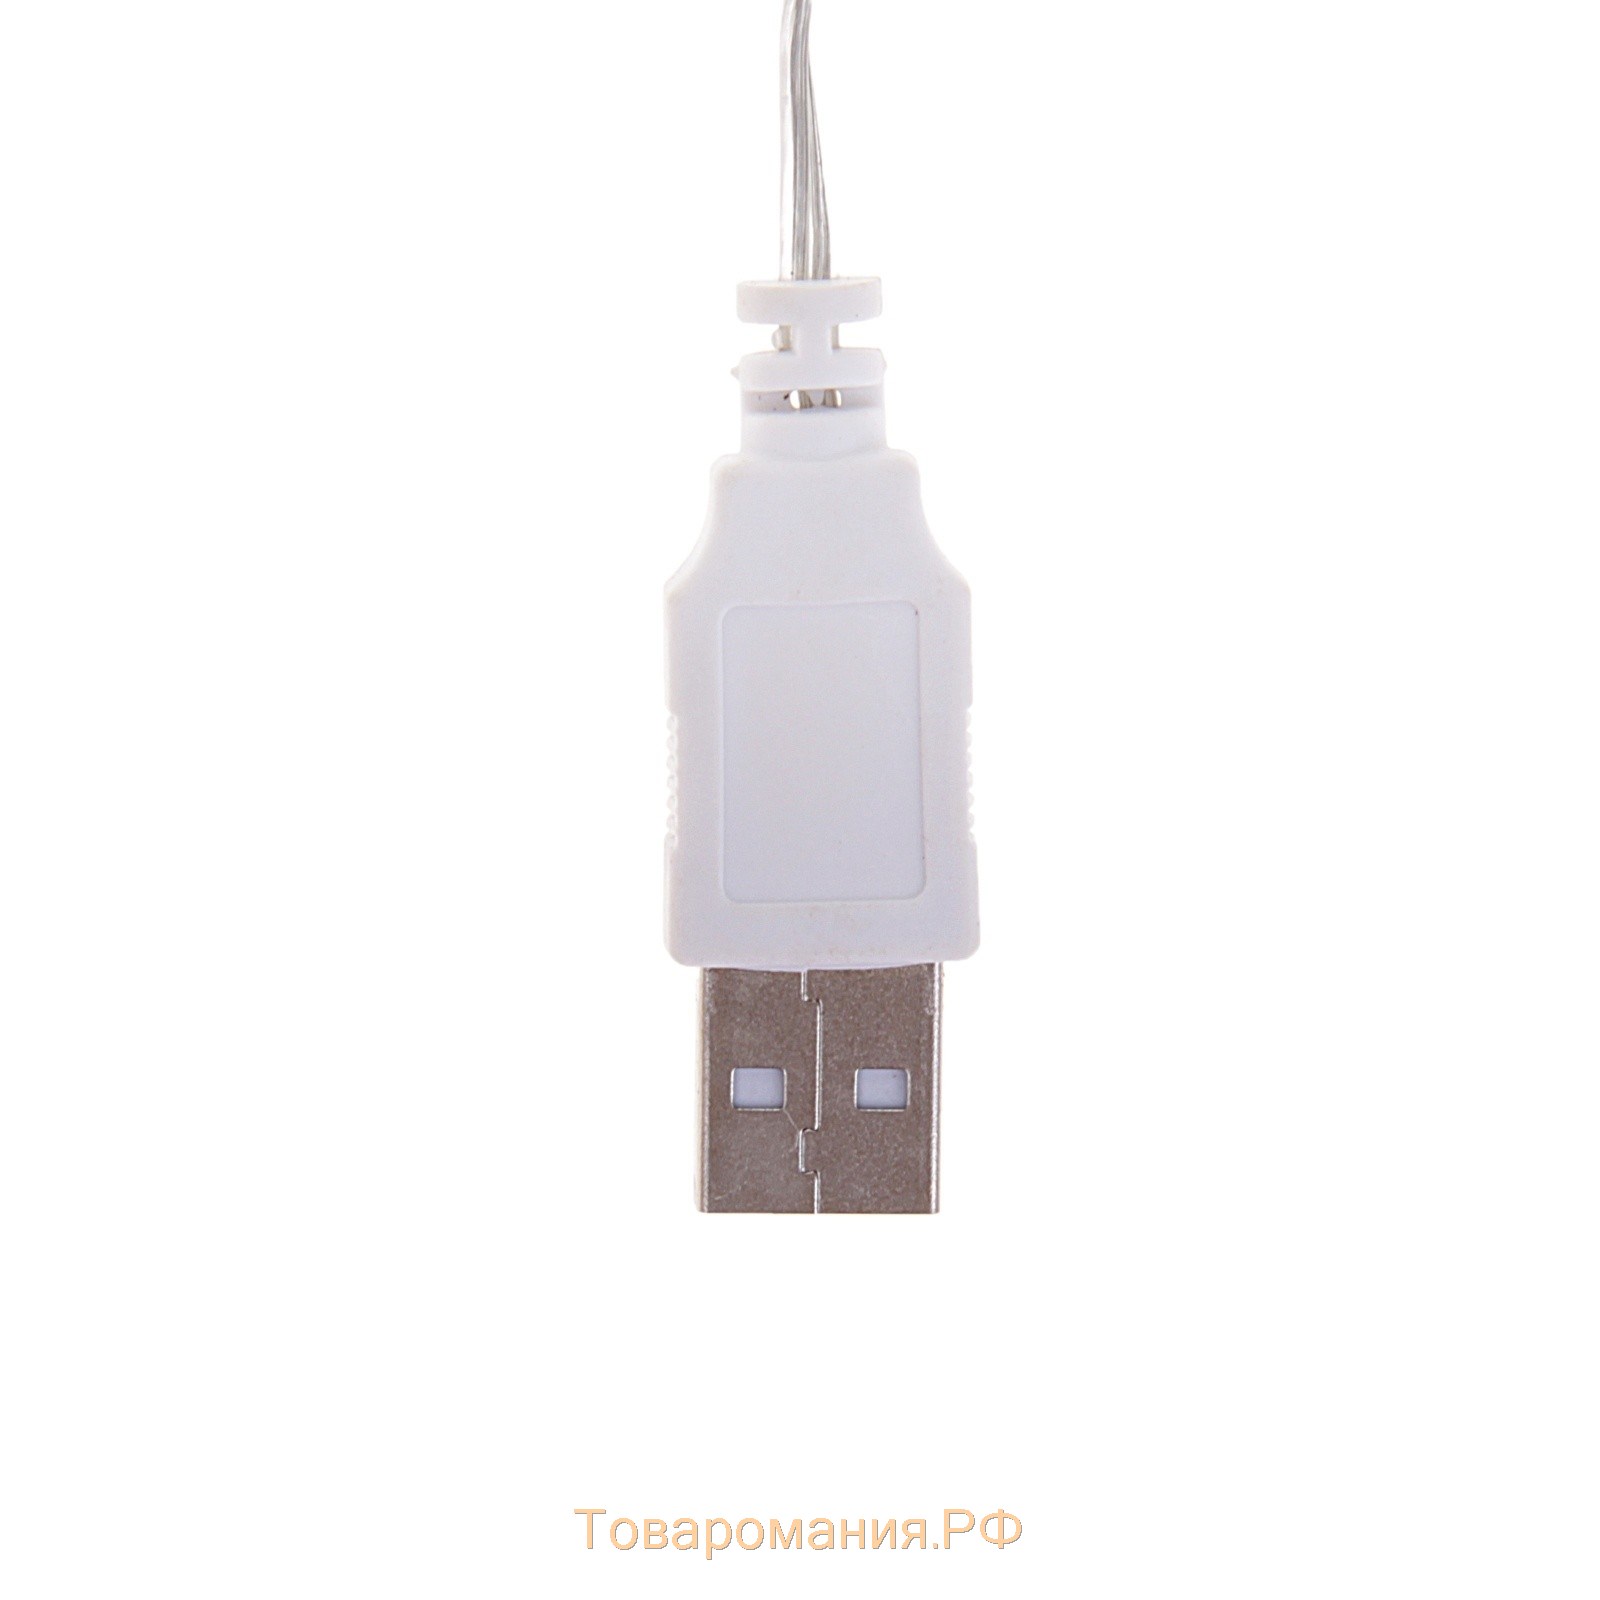 Гирлянда «Нить» 3 м с насадками «Ёлки», IP20, прозрачная нить, 20 LED, свечение мульти (RG/RB), мигание, USB